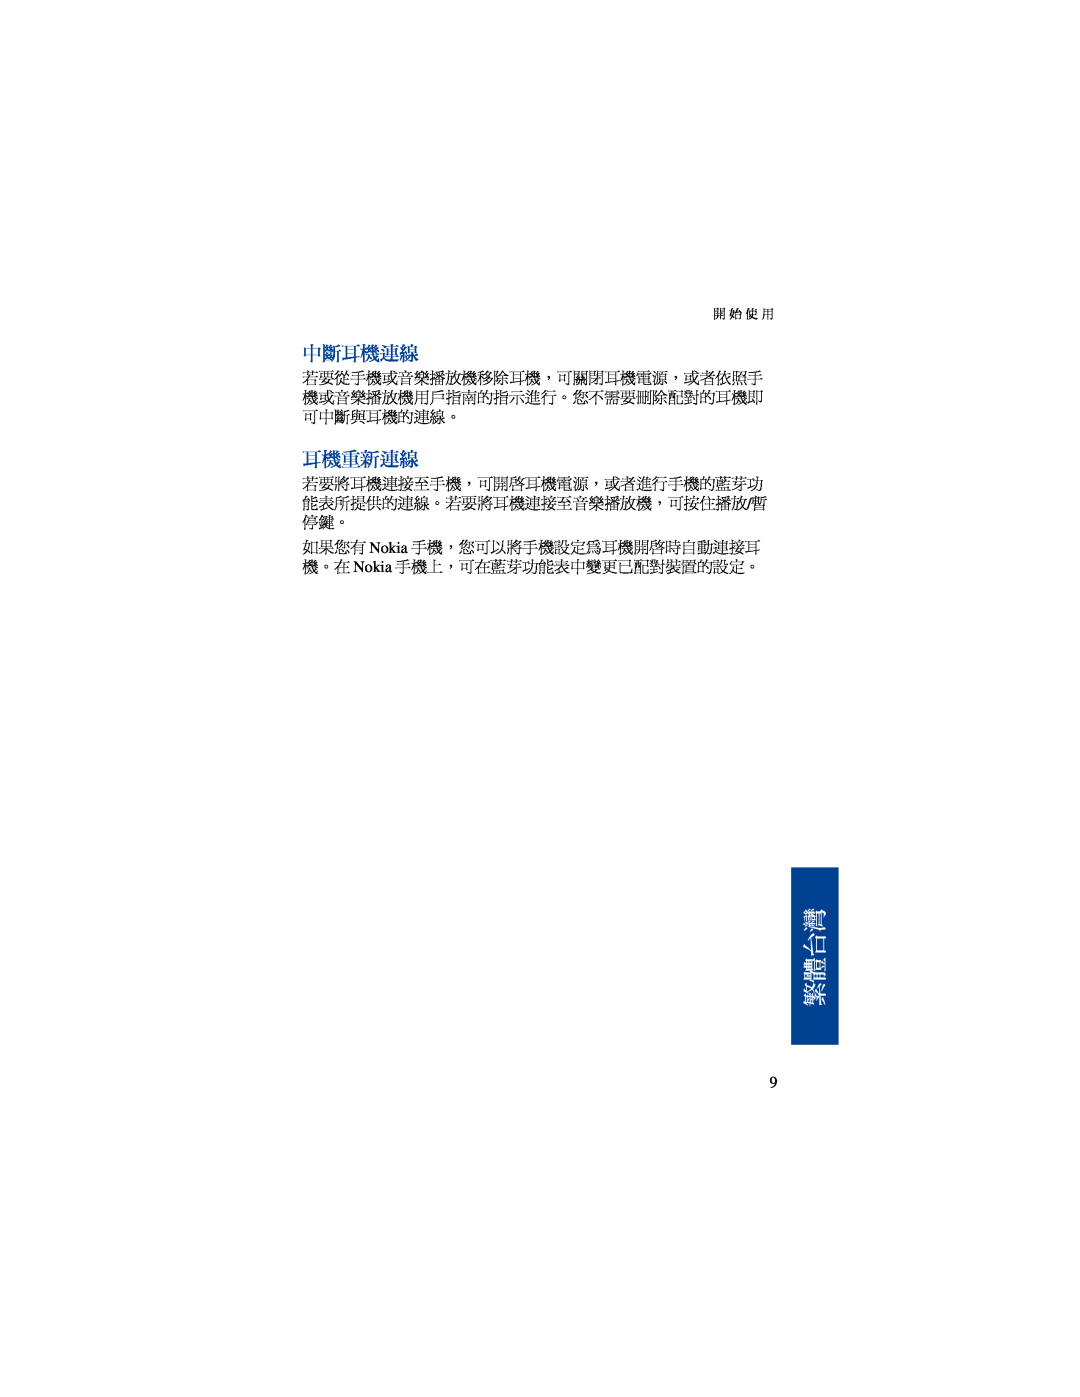 Nokia BH-500 manual 中斷耳機連線, 耳機重新連線, 繁體台灣 